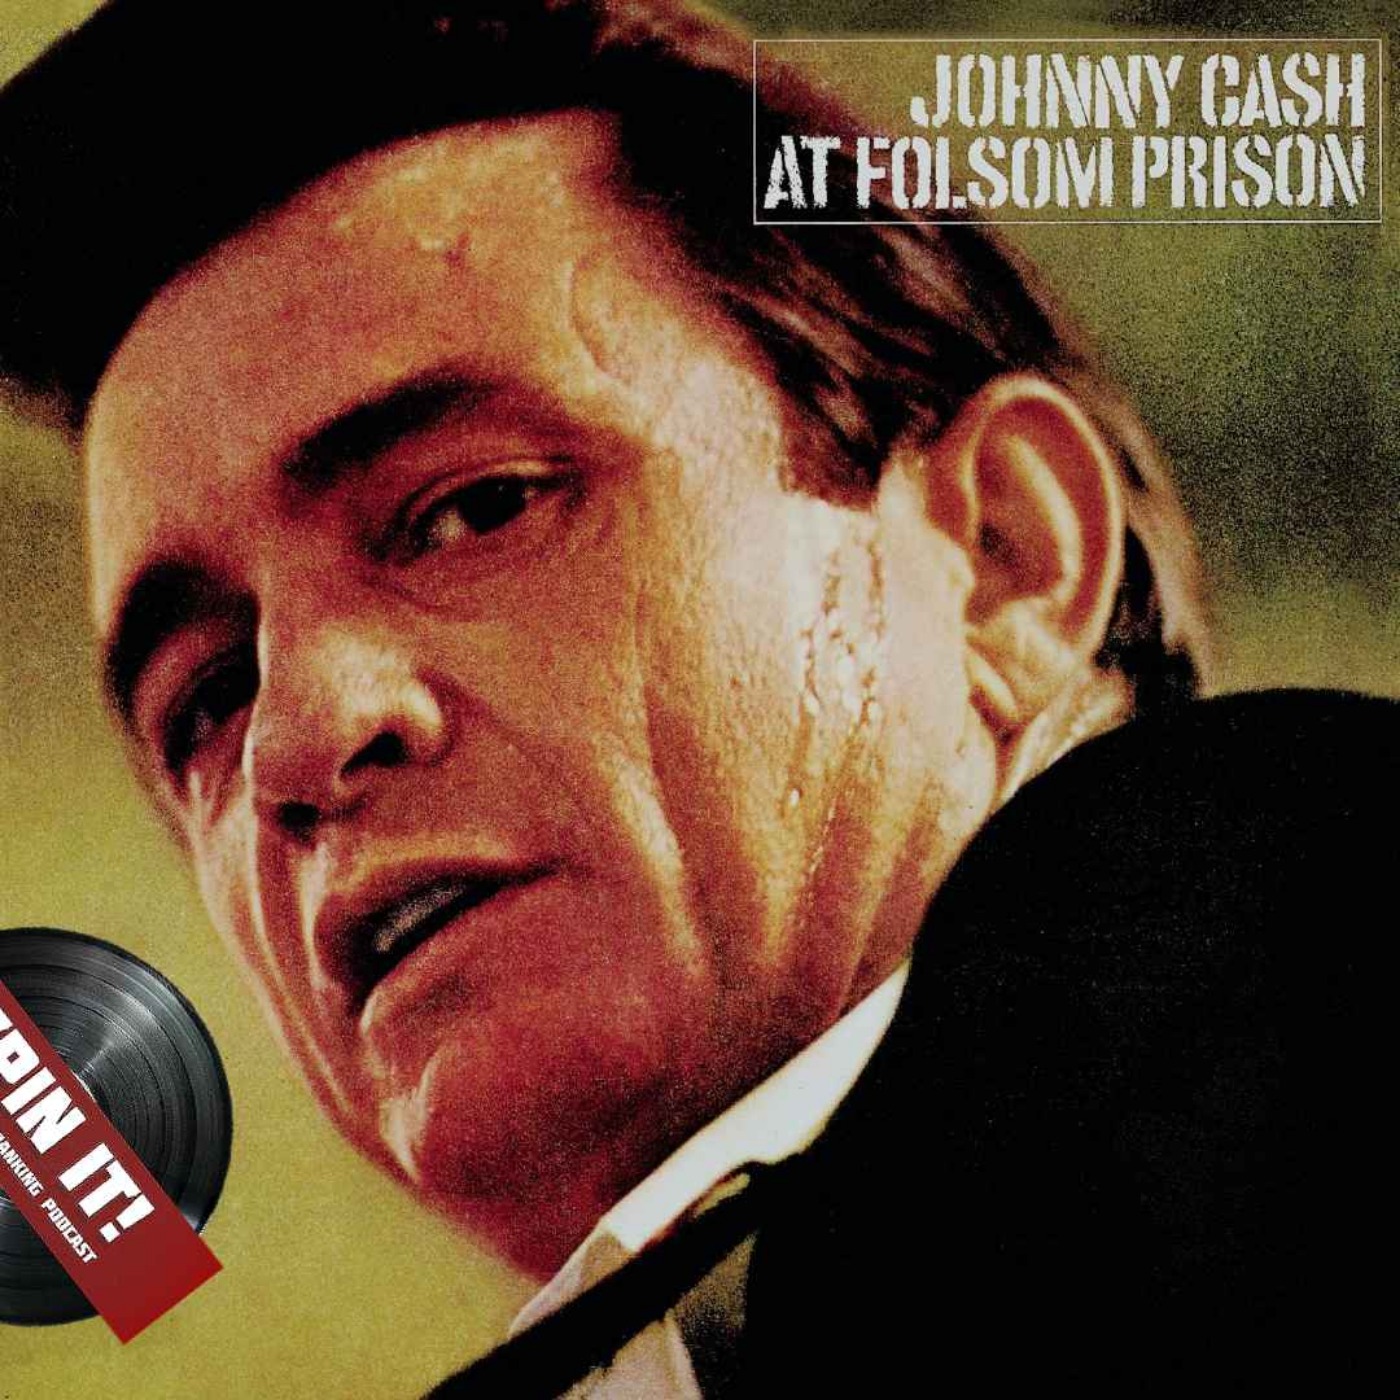 At Folsom Prison - Johnny Cash: Episode 43